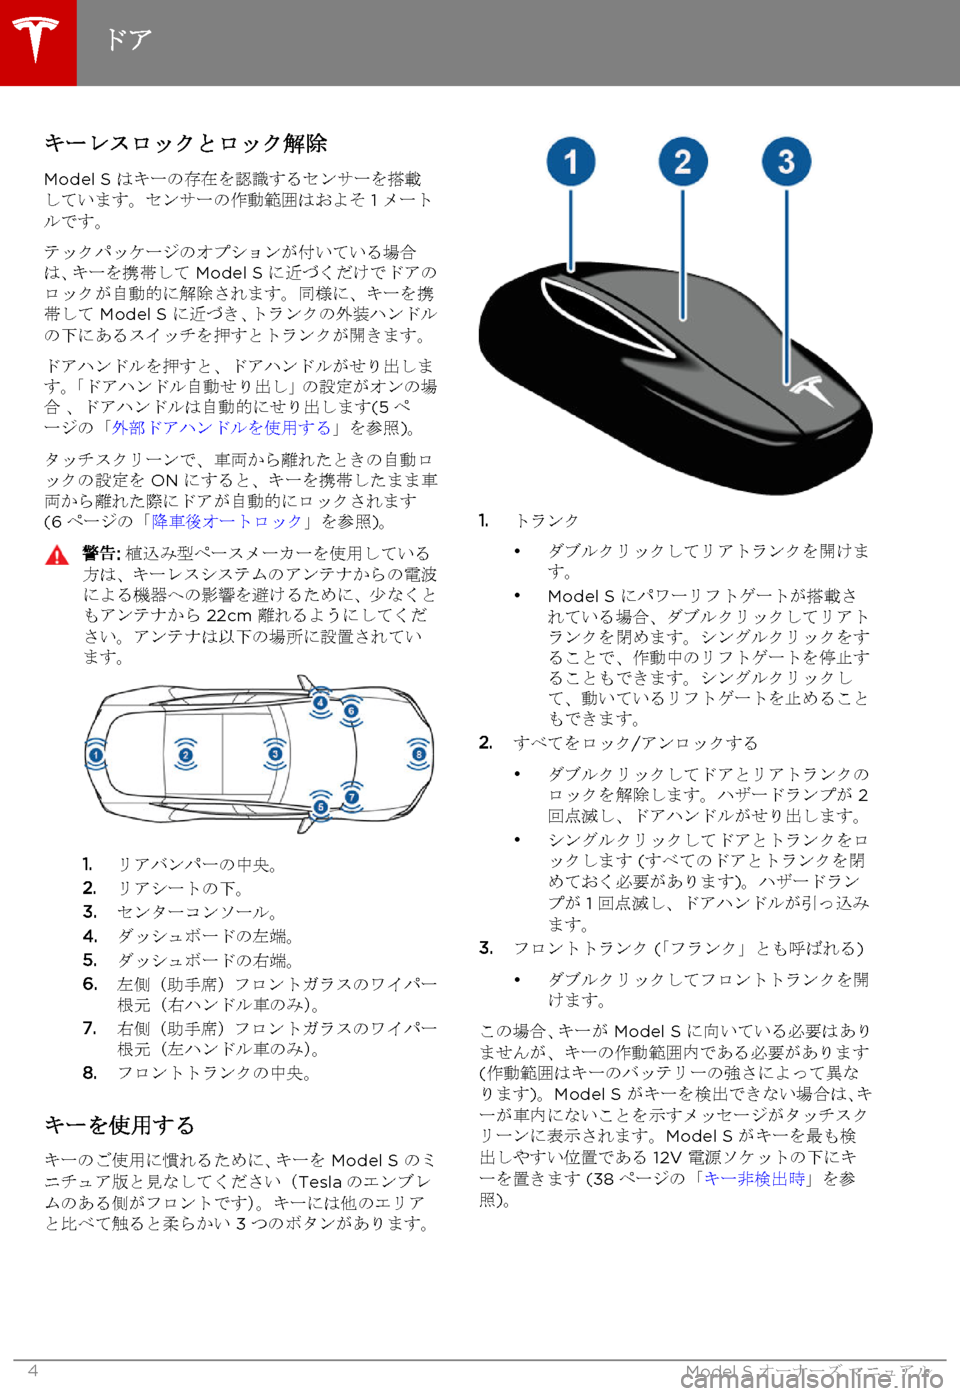 TESLA MODEL S 2015  取扱説明書 (in Japanese)  キーレスロックとロック解除
Model S はキーの存在を認識するセンサーを搭載しています。センサーの作動範囲はおよそ 1 メートルです。
テックパッ�